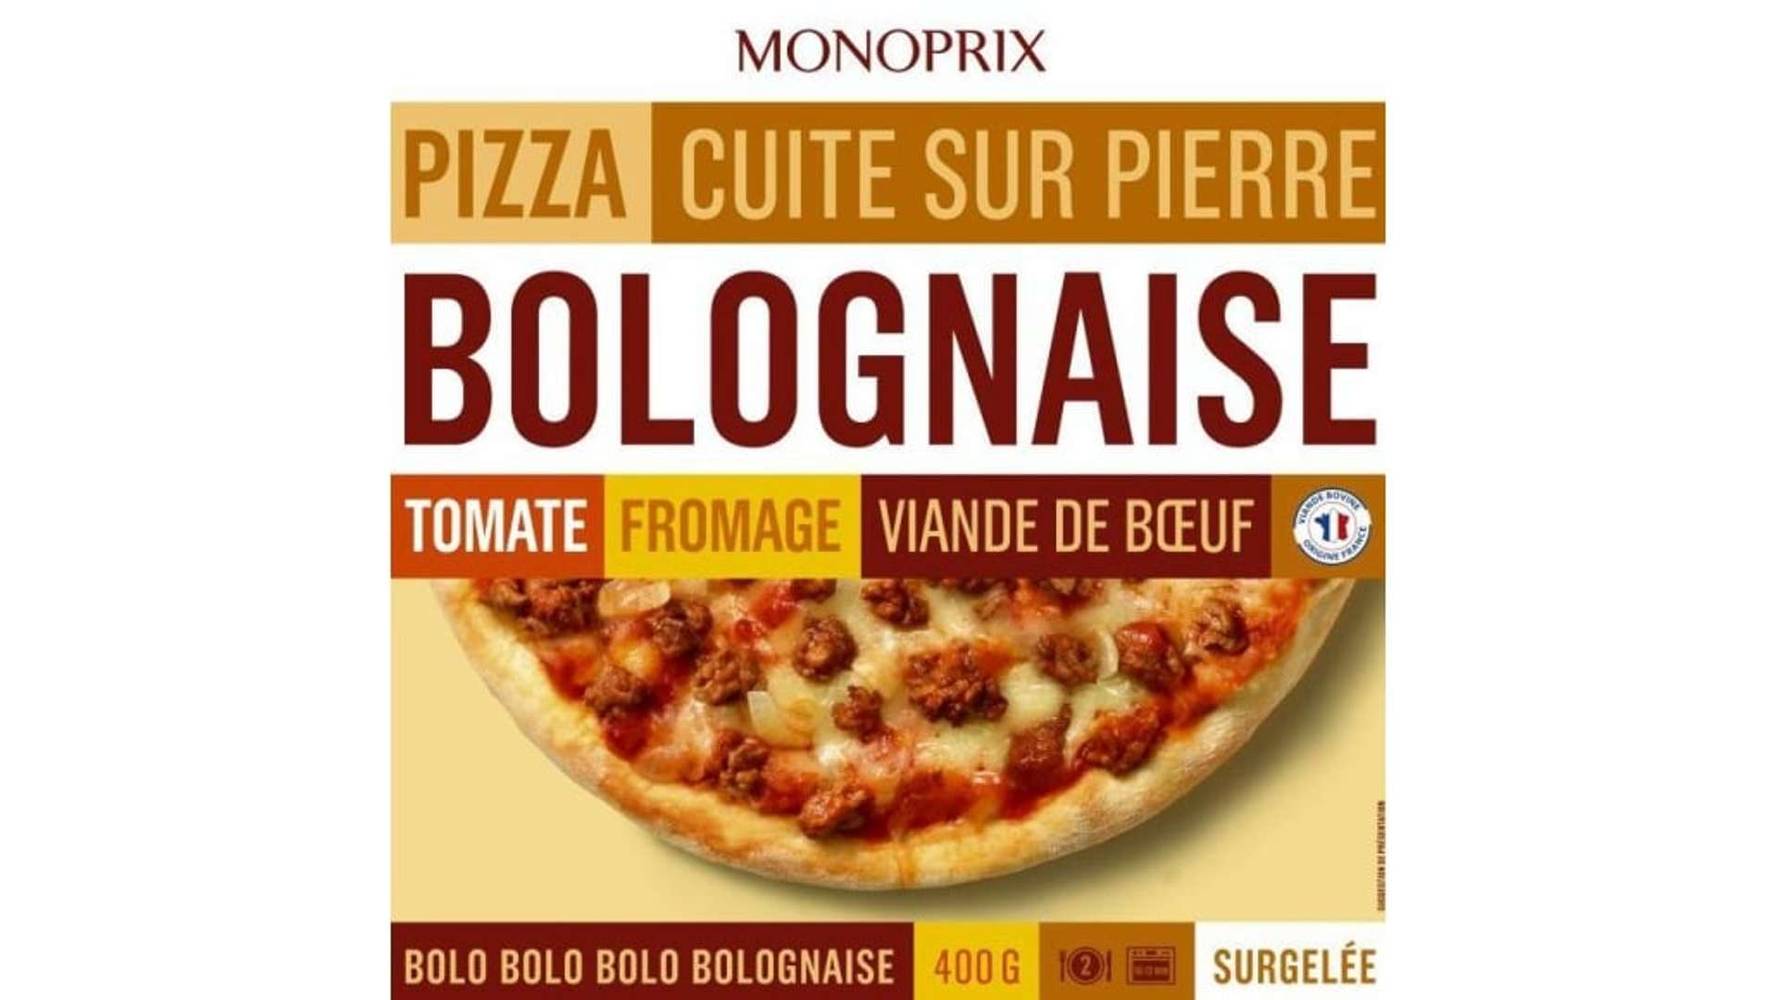 Monoprix Pizza à la bolognaise cuite sur pierre, surgelés La boîte de 400g